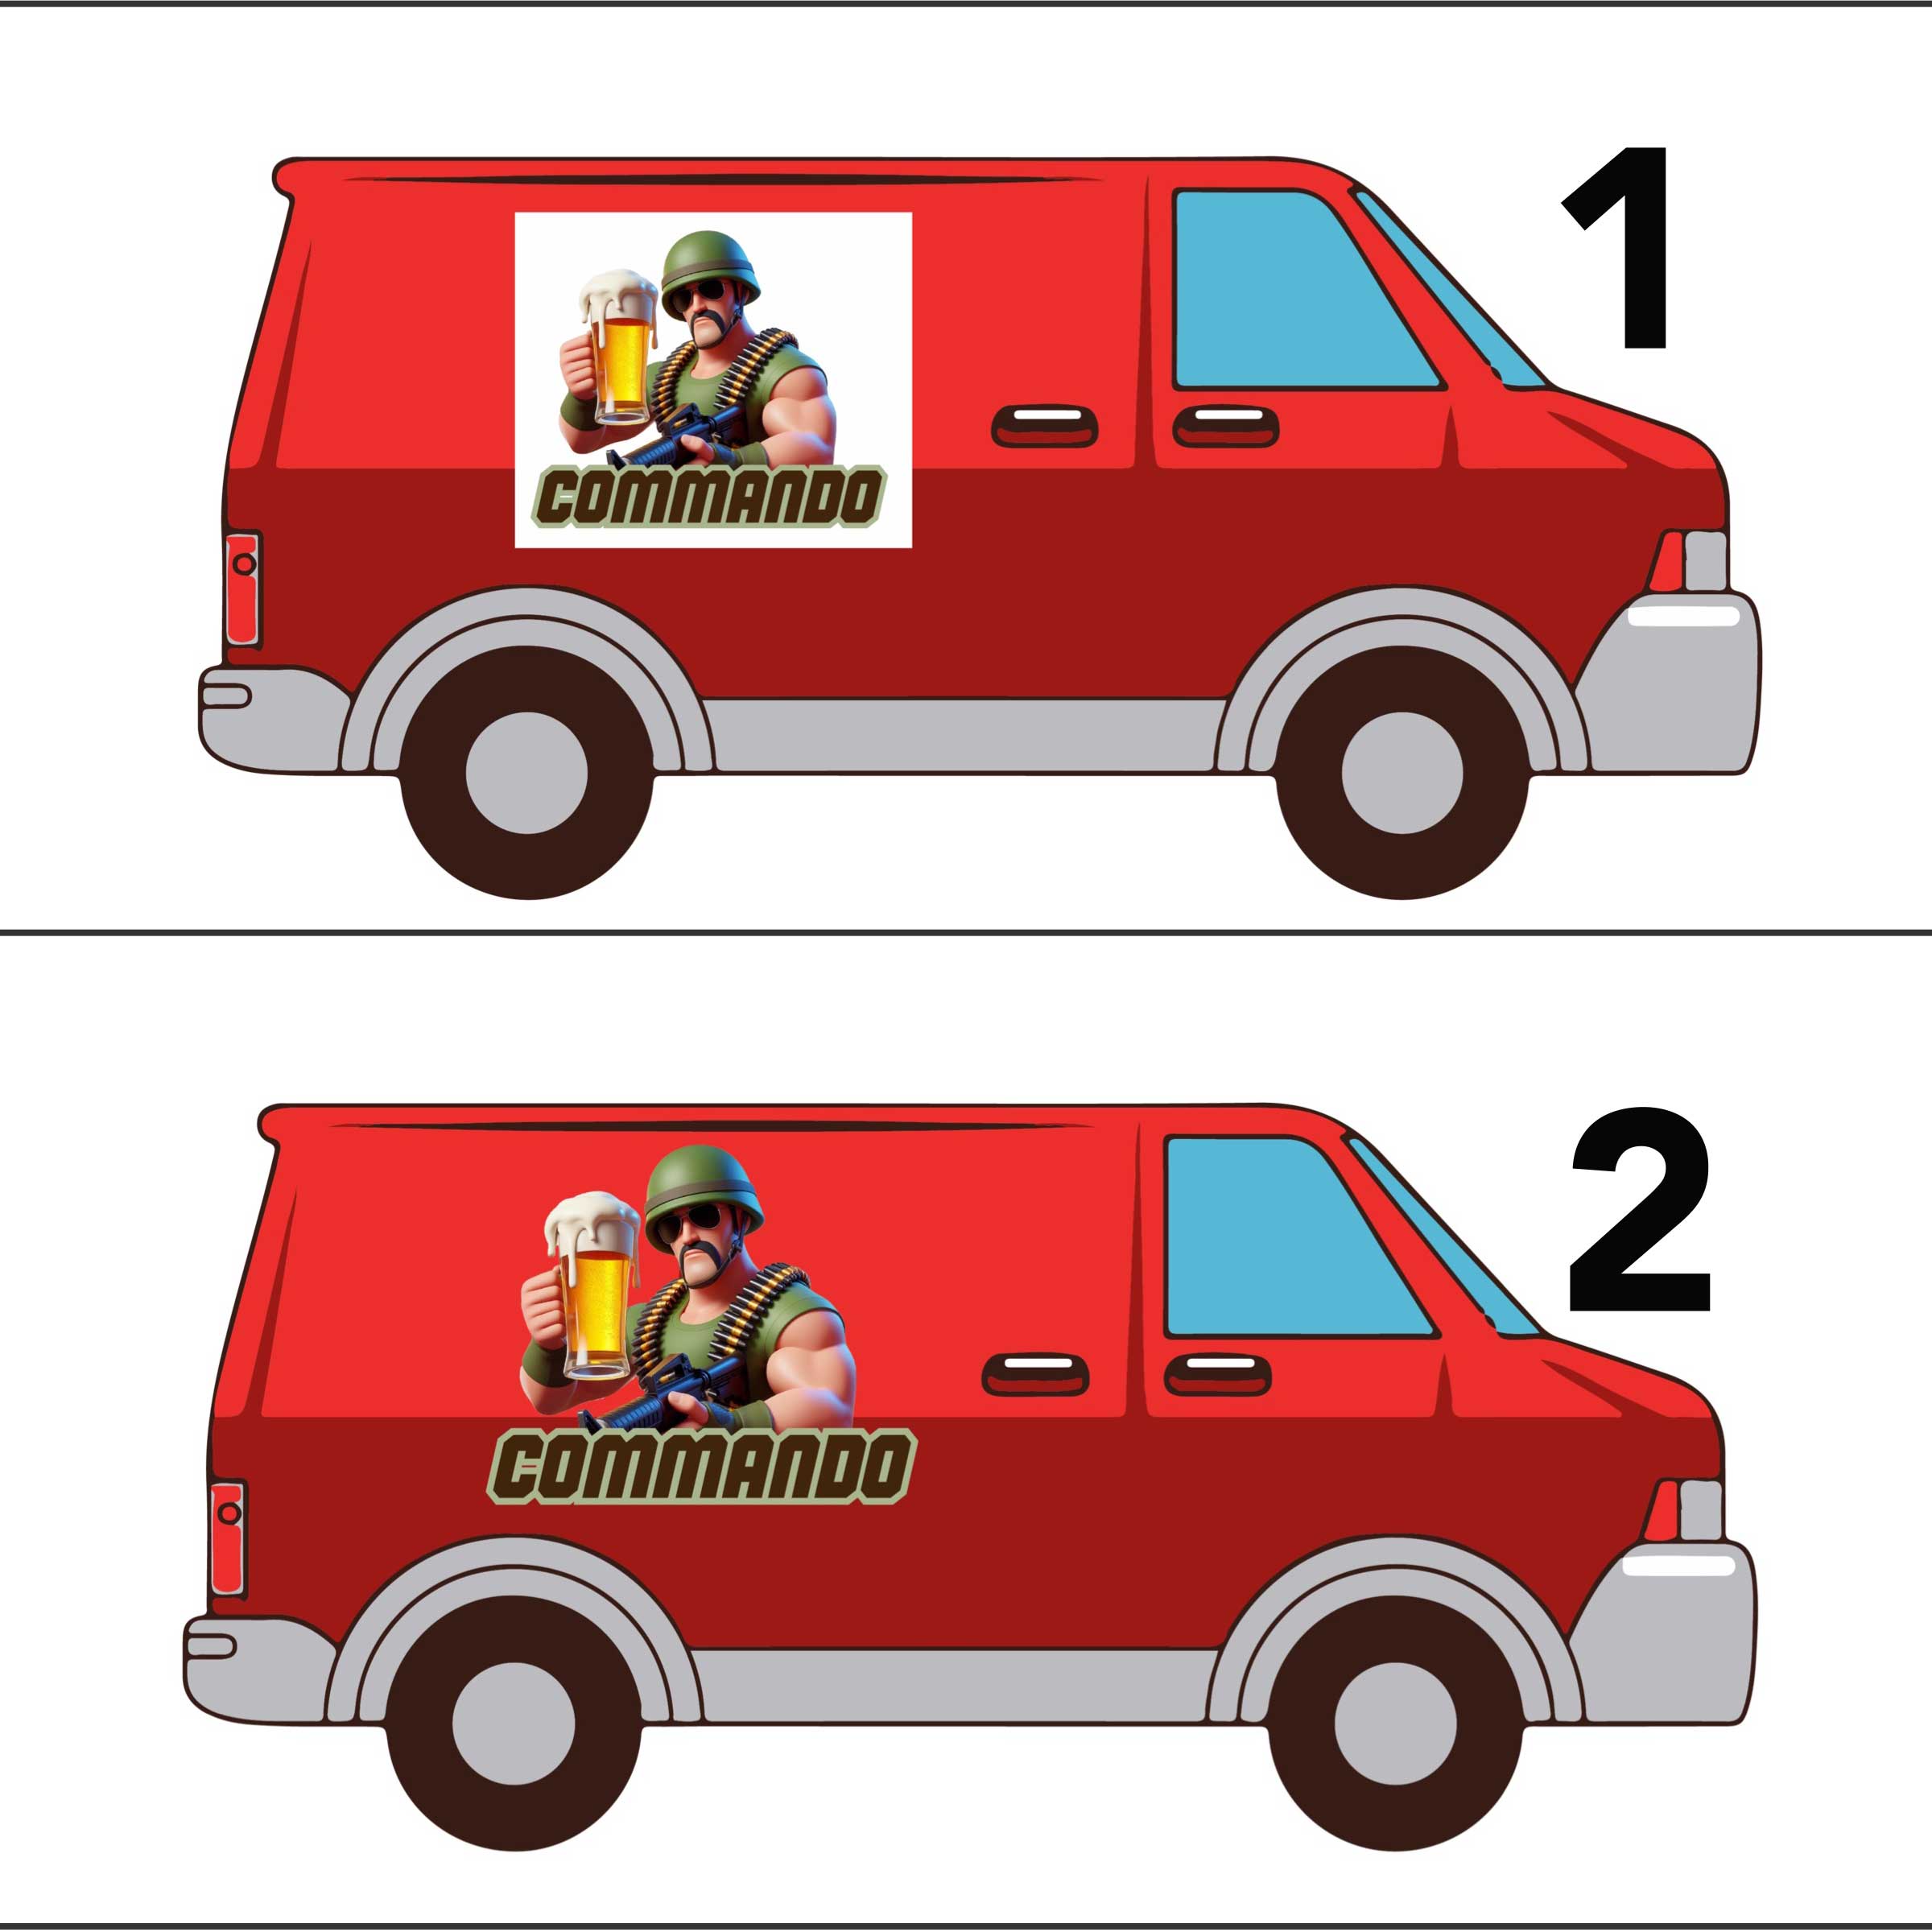 Eksempel som viser forskjell på vanlig og konturskåret logo på rød russebil